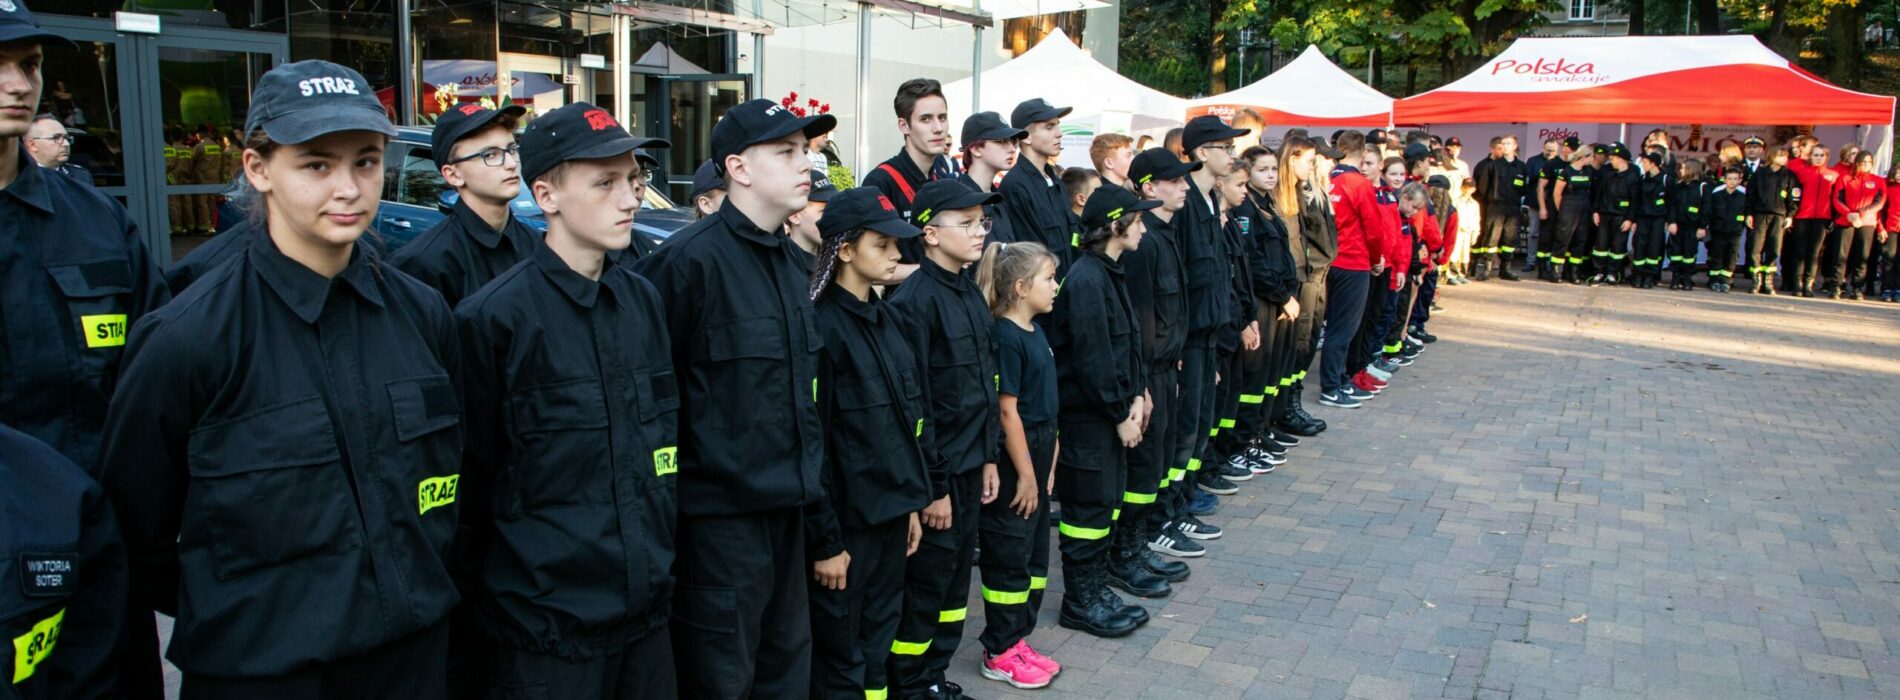 Młodzi podtrzymują strażacką tradycję